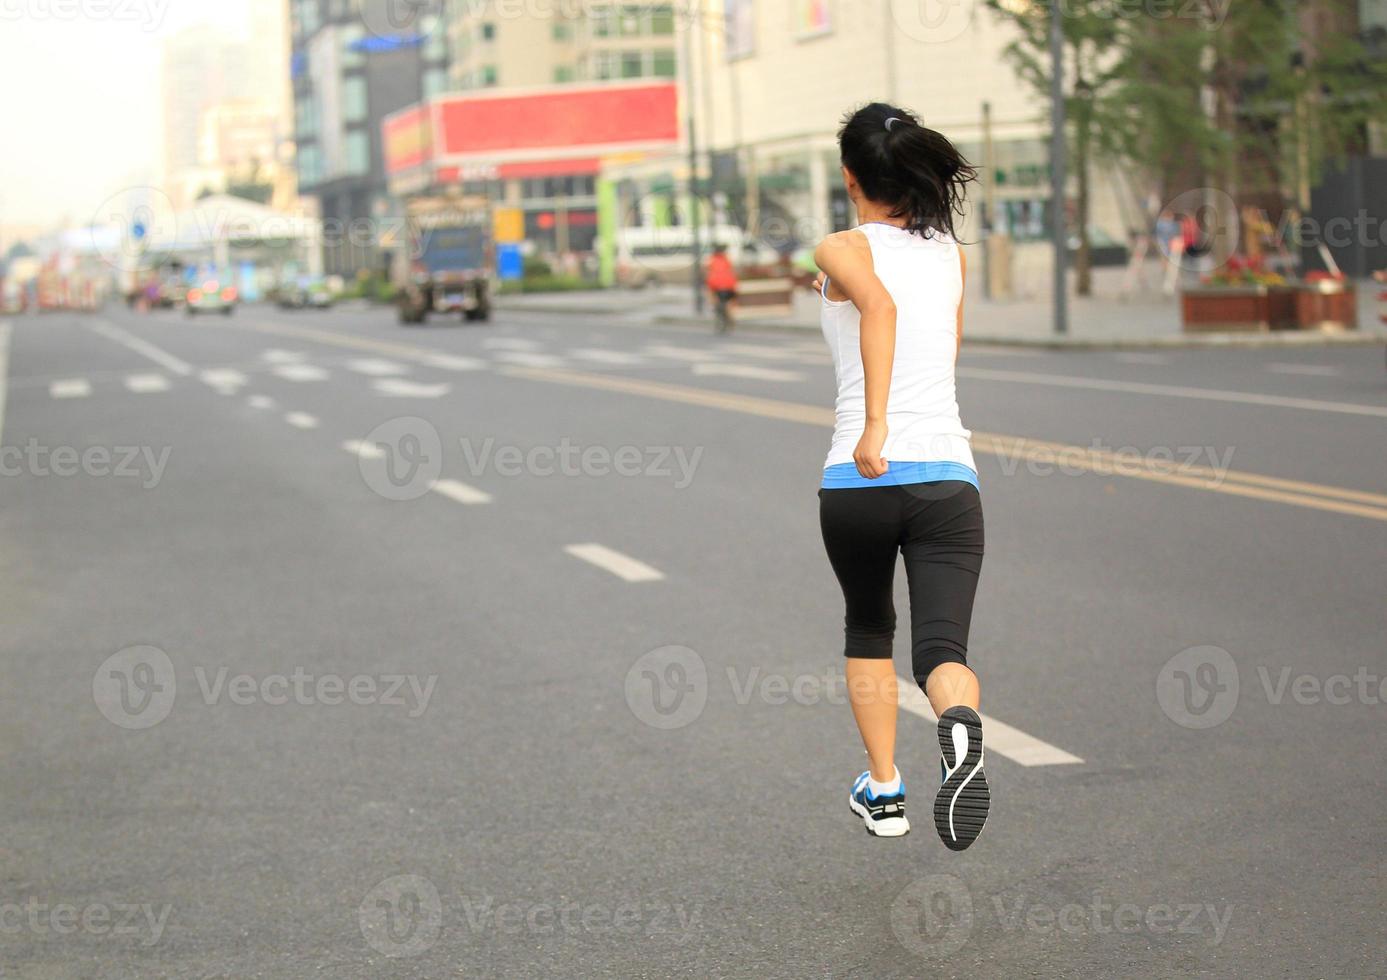 gezonde levensstijl fitness sport vrouw draait op weg van de stad foto